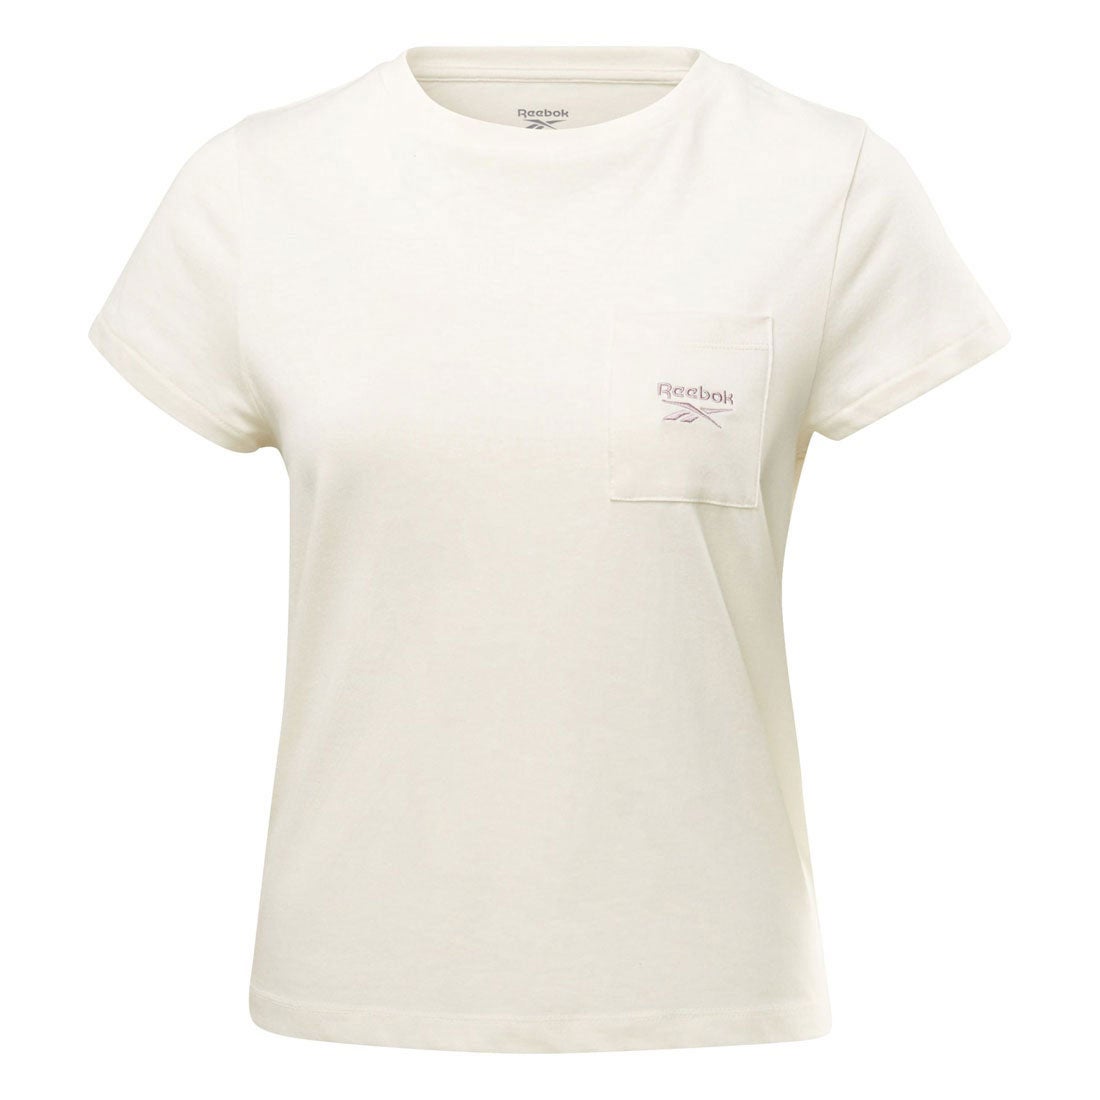 アイデンティティ ポケット Tシャツ / Identity Pocket T-Shirt （クラシックホワイト）